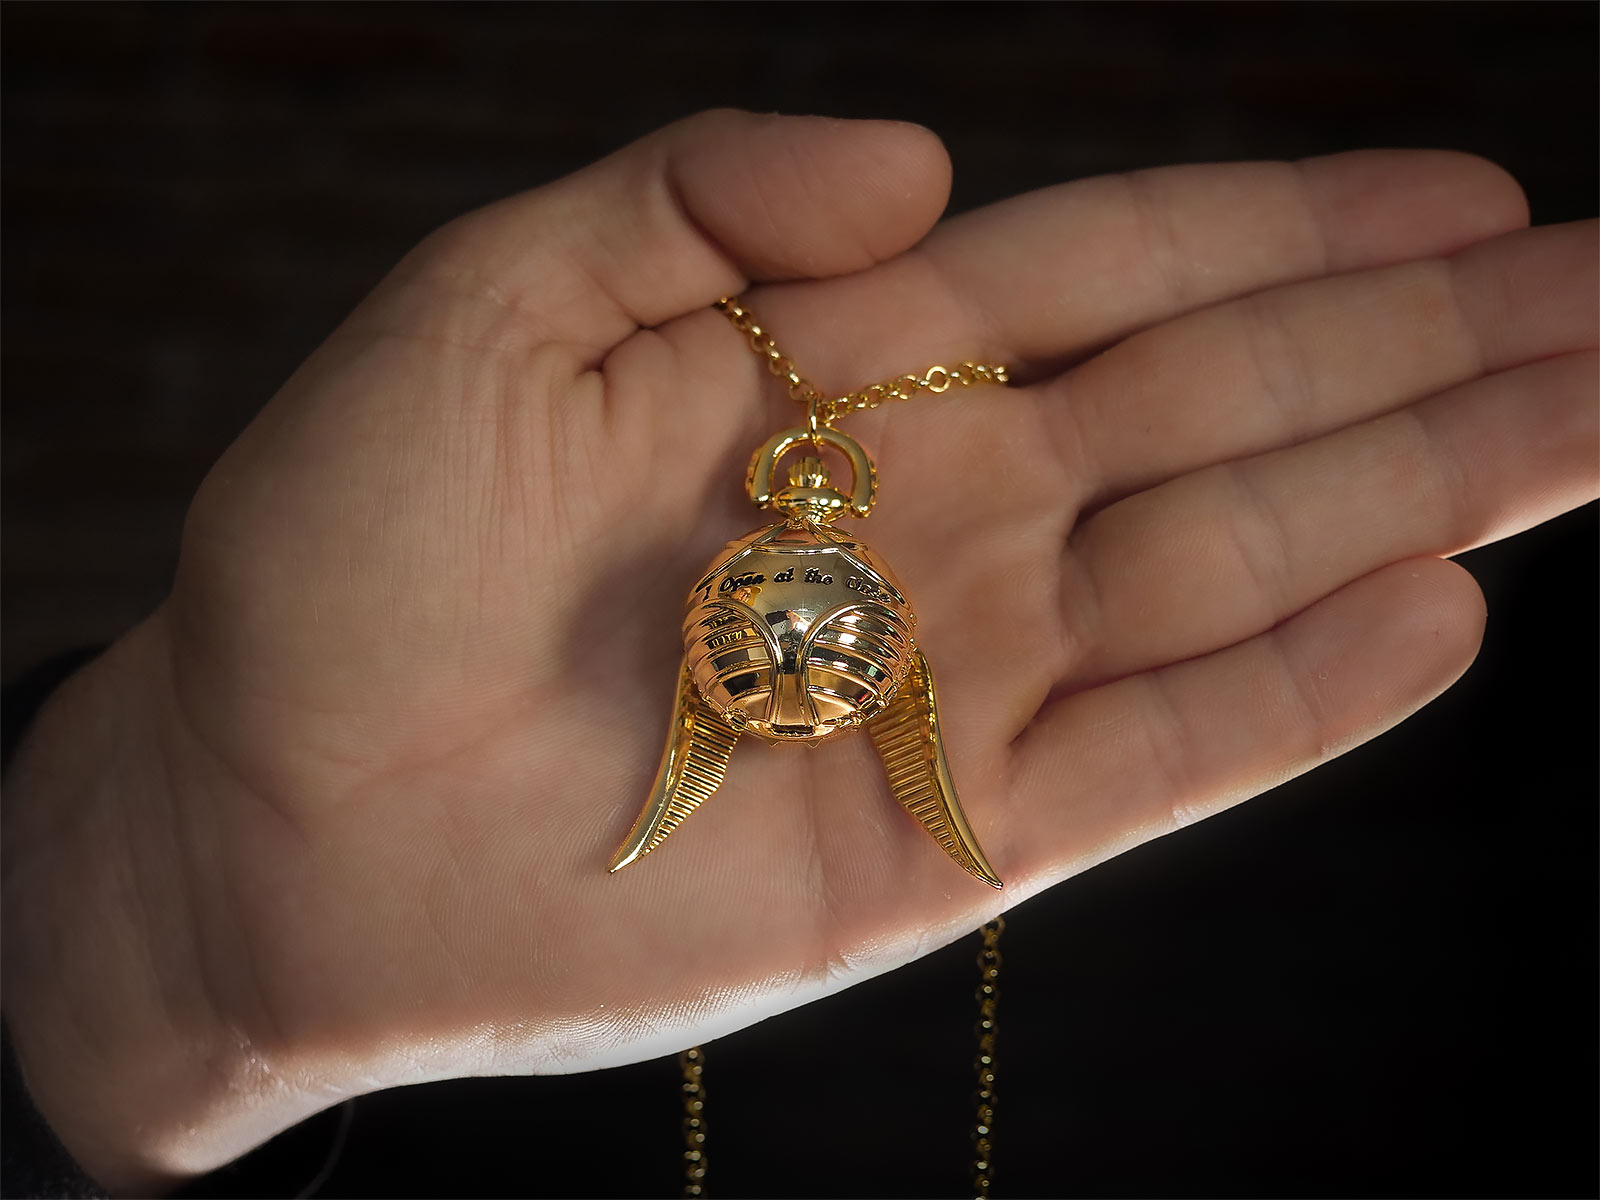 Harry Potter Kette mit goldenem Schnatz aus dem Quidditch Spiel 